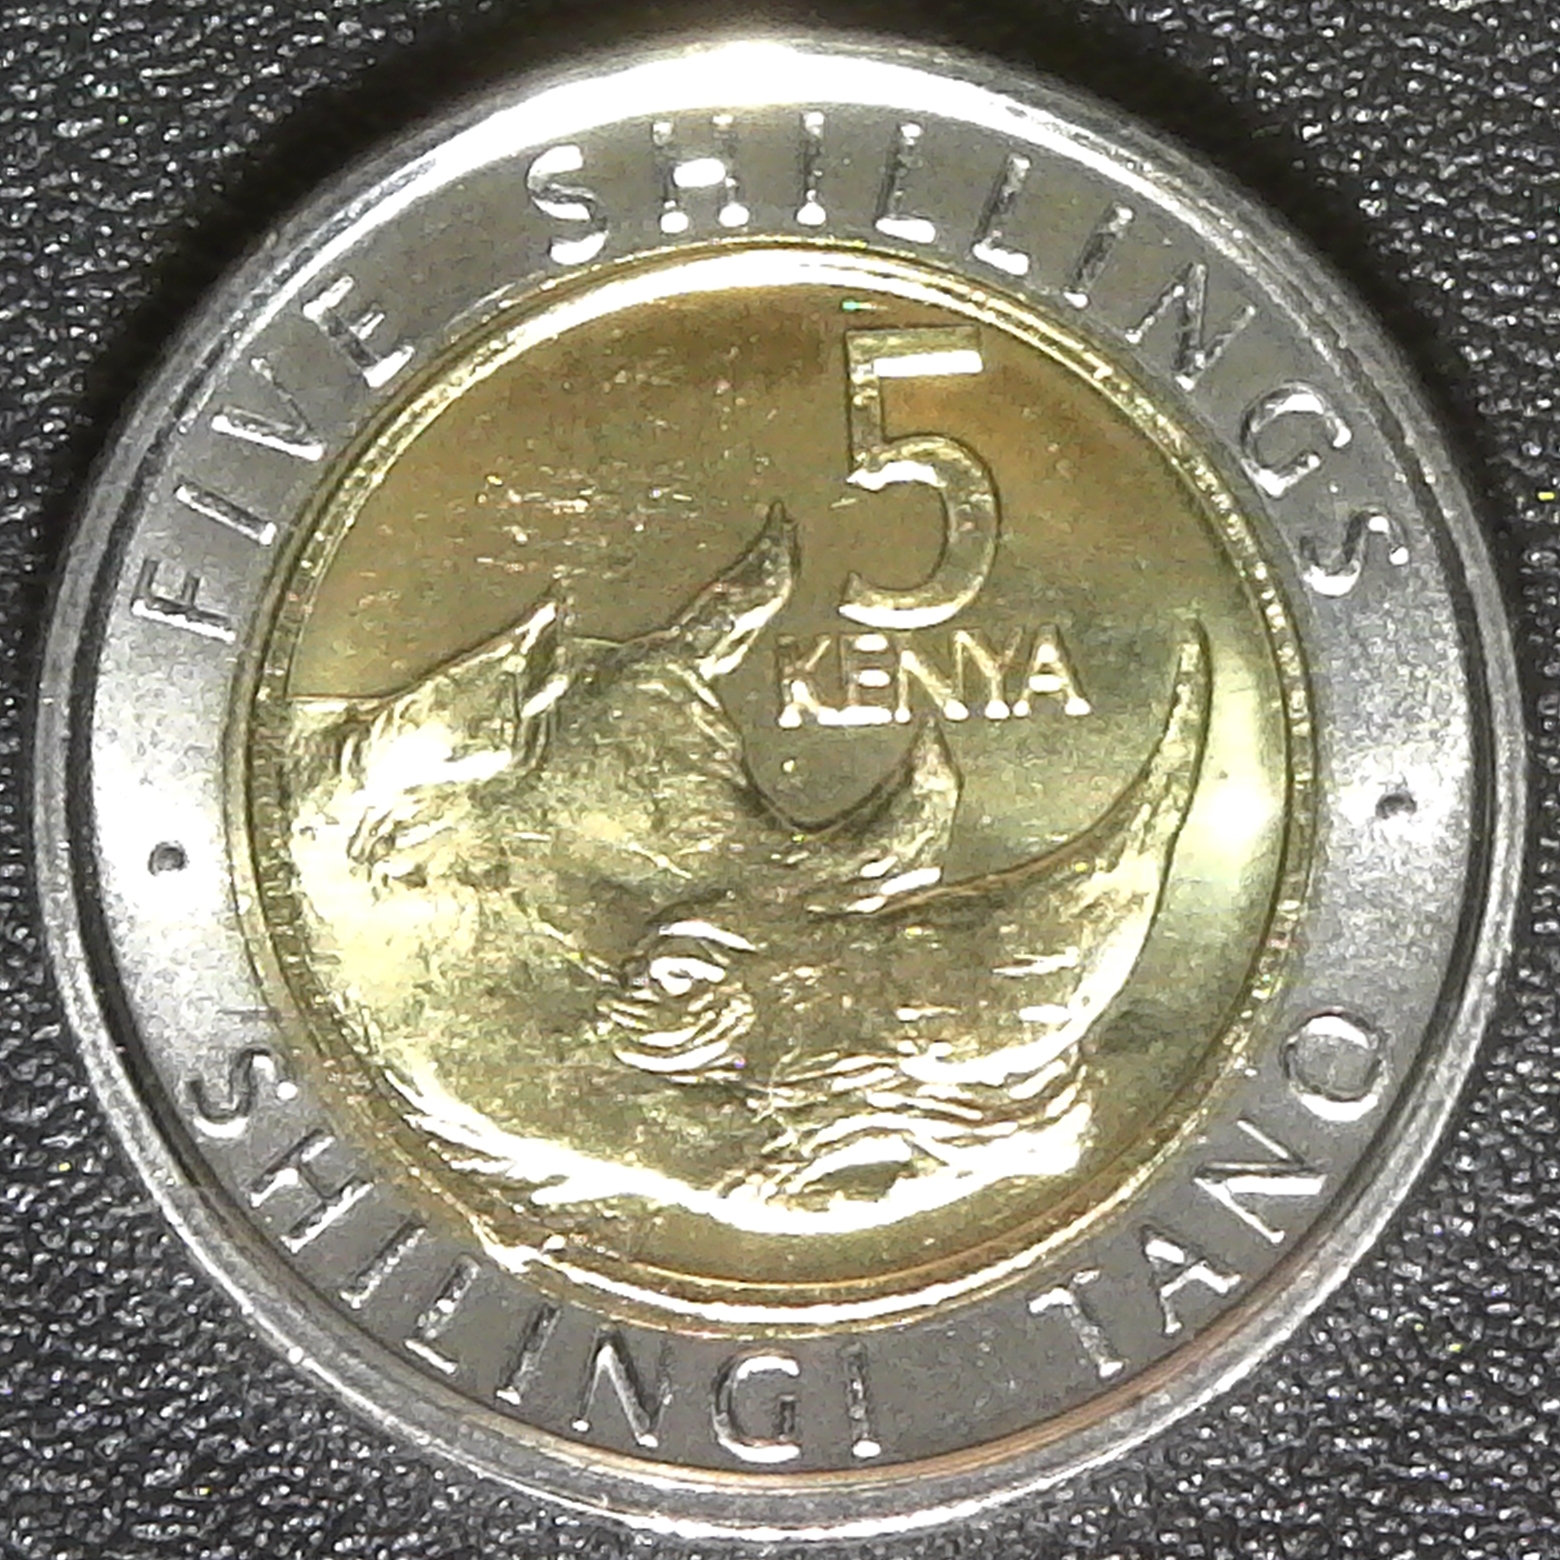 Kenya 5 shillings 2018 rev.jpg